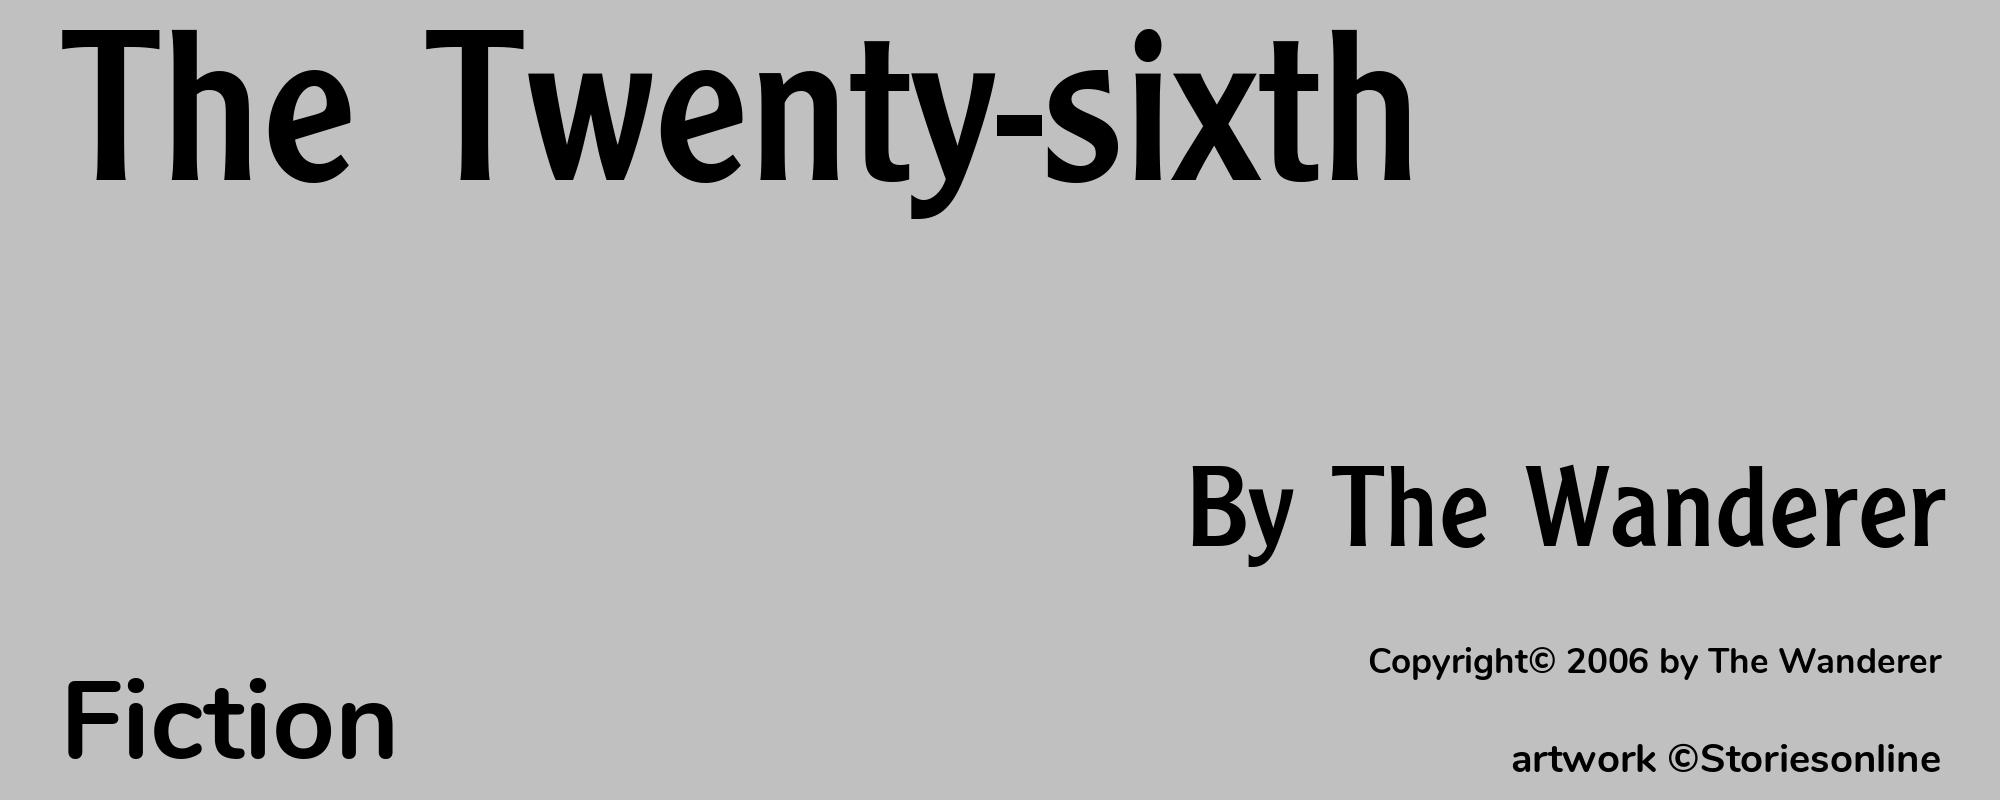 The Twenty-sixth - Cover